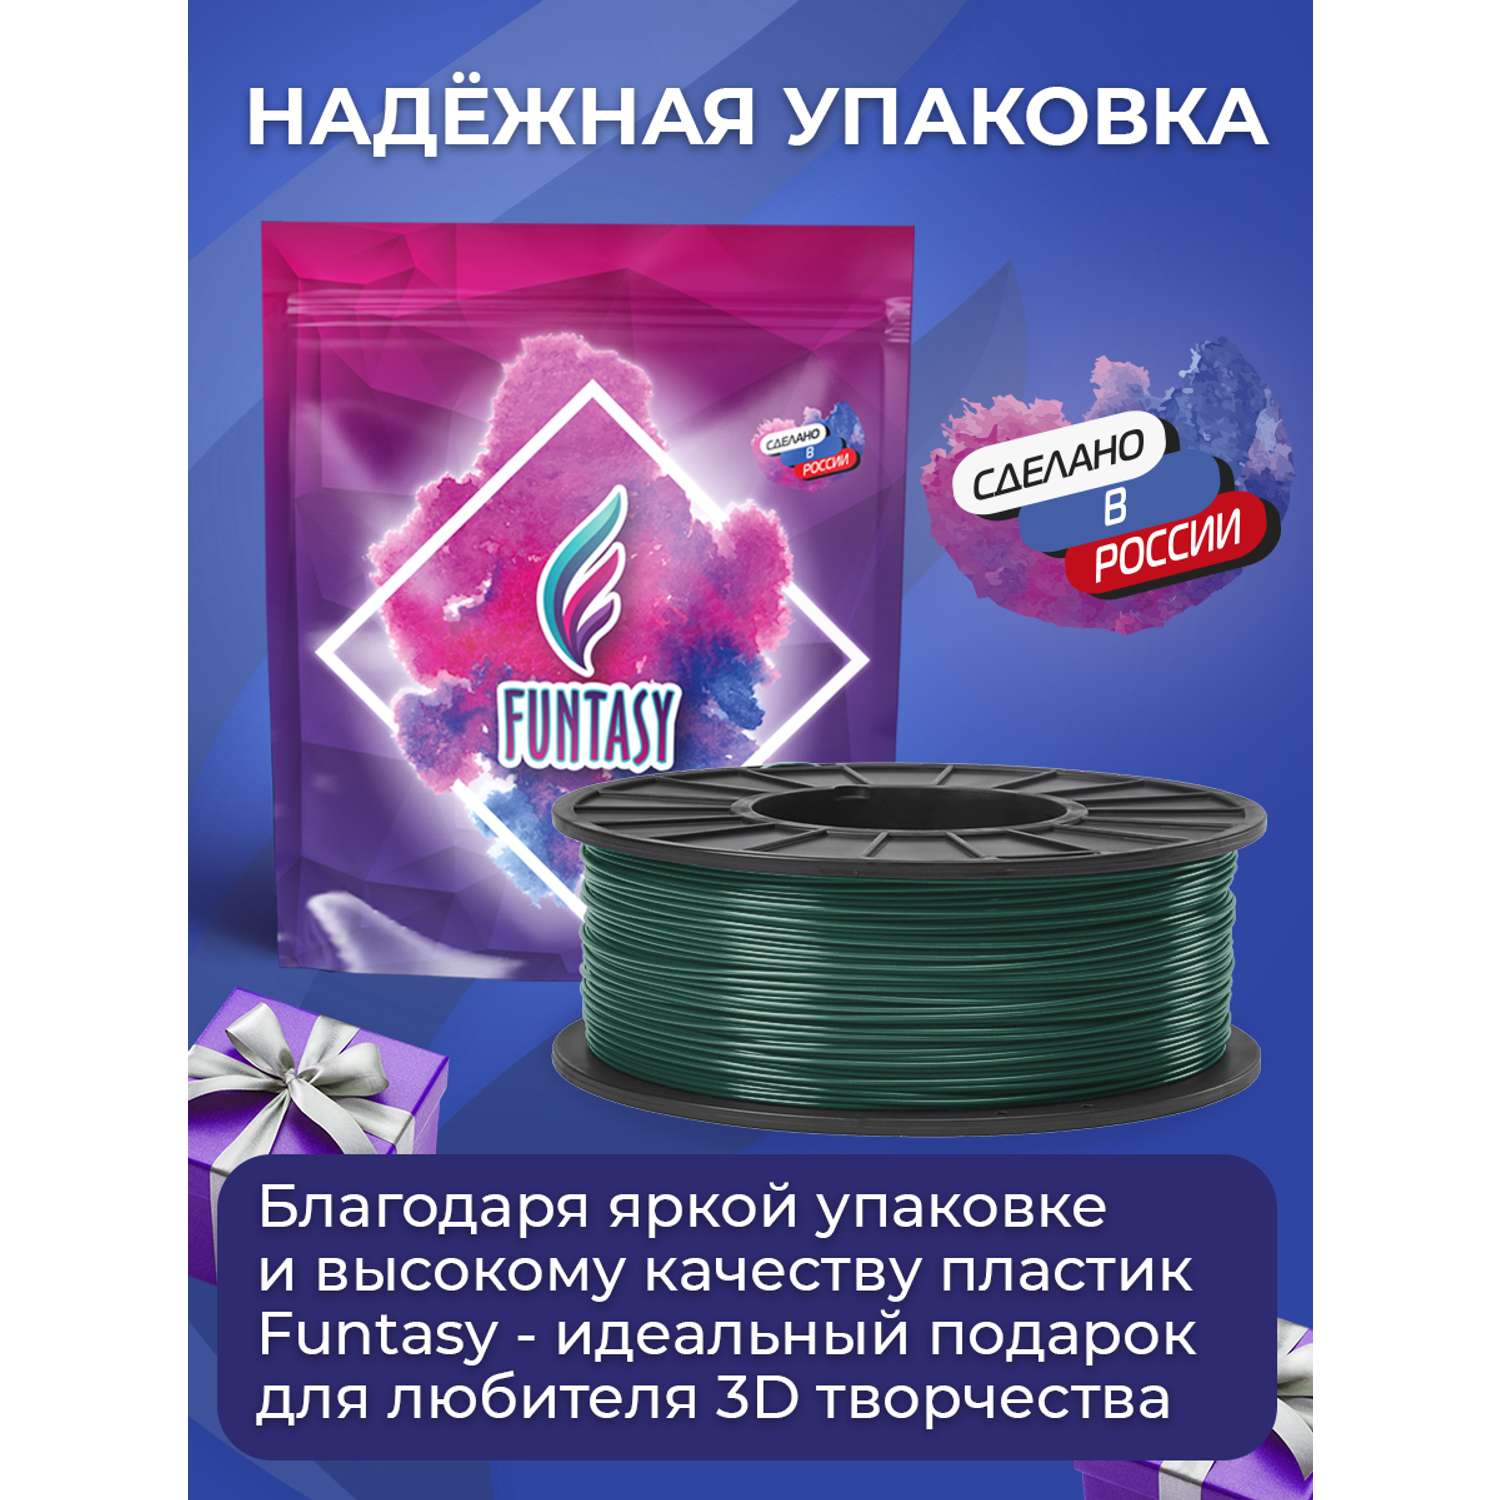 Пластик в катушке Funtasy PETG 1.75 мм 1 кг цвет темно зеленый - фото 6